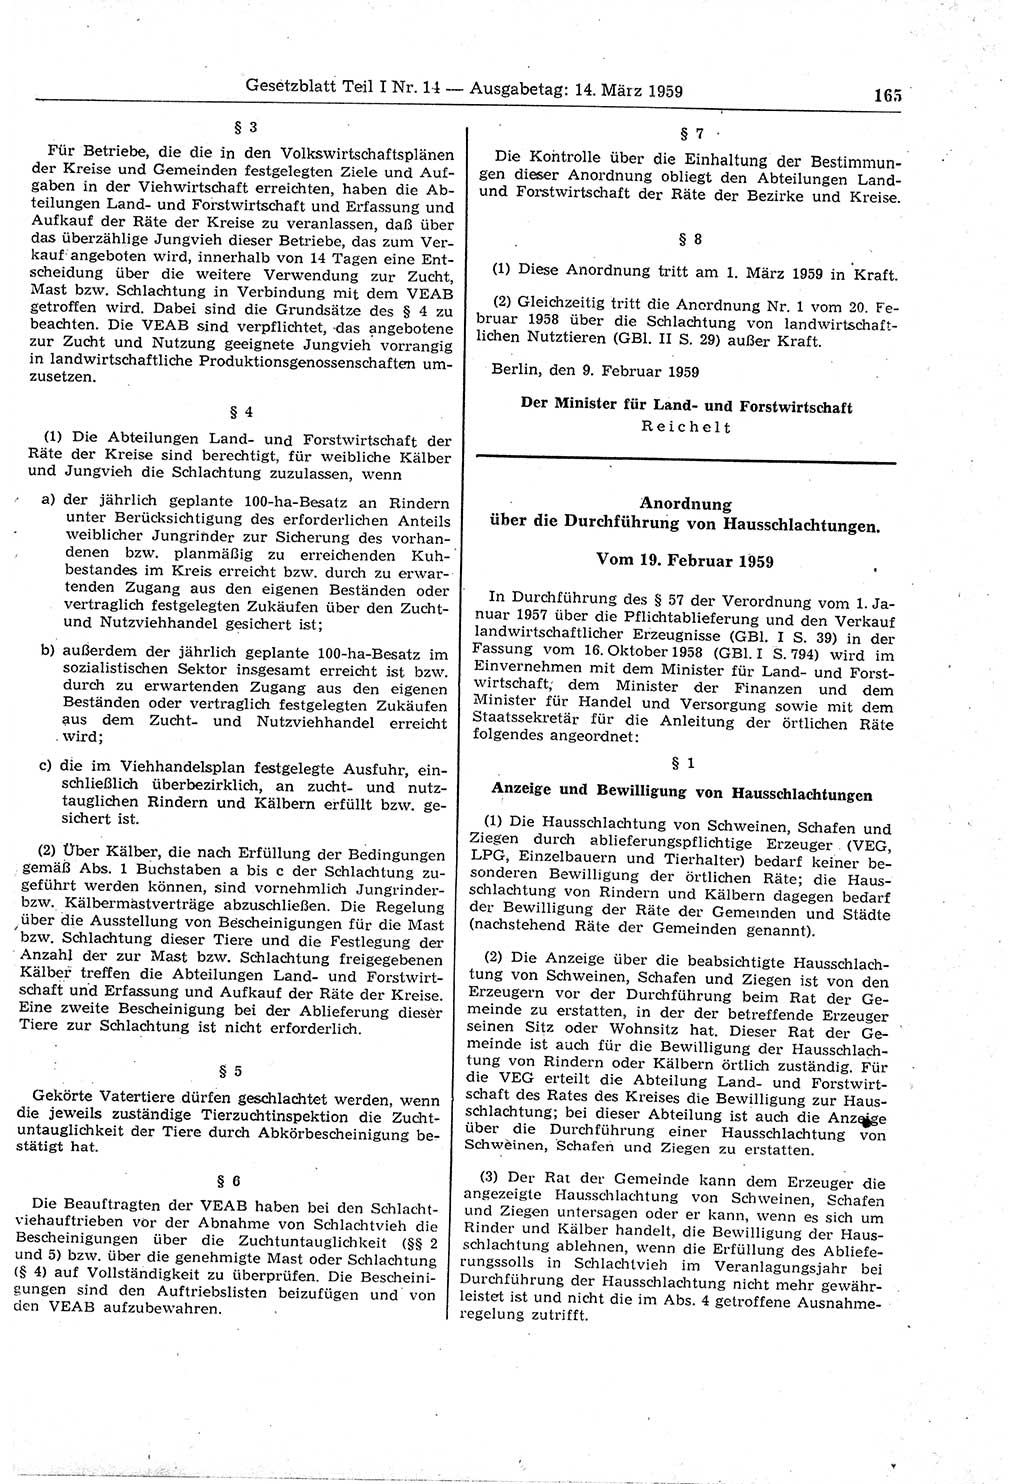 Gesetzblatt (GBl.) der Deutschen Demokratischen Republik (DDR) Teil Ⅰ 1959, Seite 165 (GBl. DDR Ⅰ 1959, S. 165)